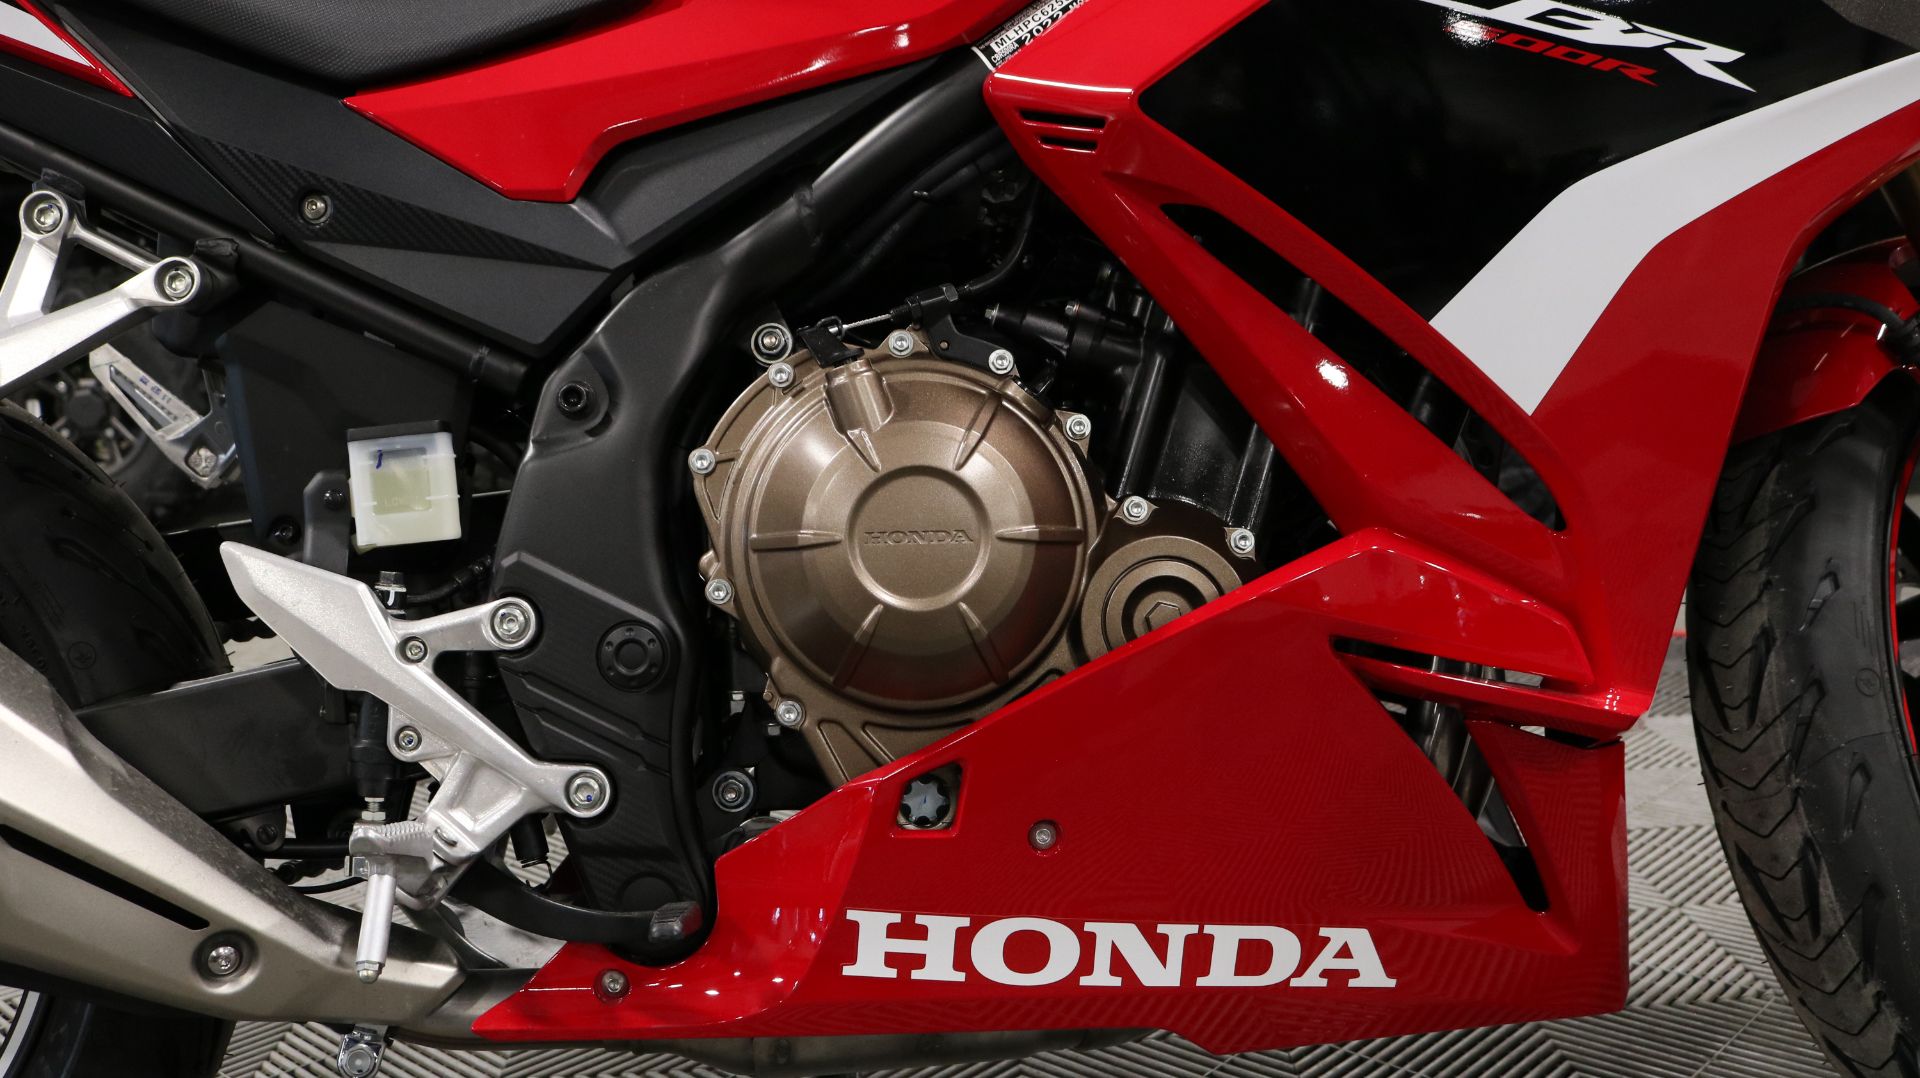 2022 Honda CBR500R ABS in Ames, Iowa - Photo 16